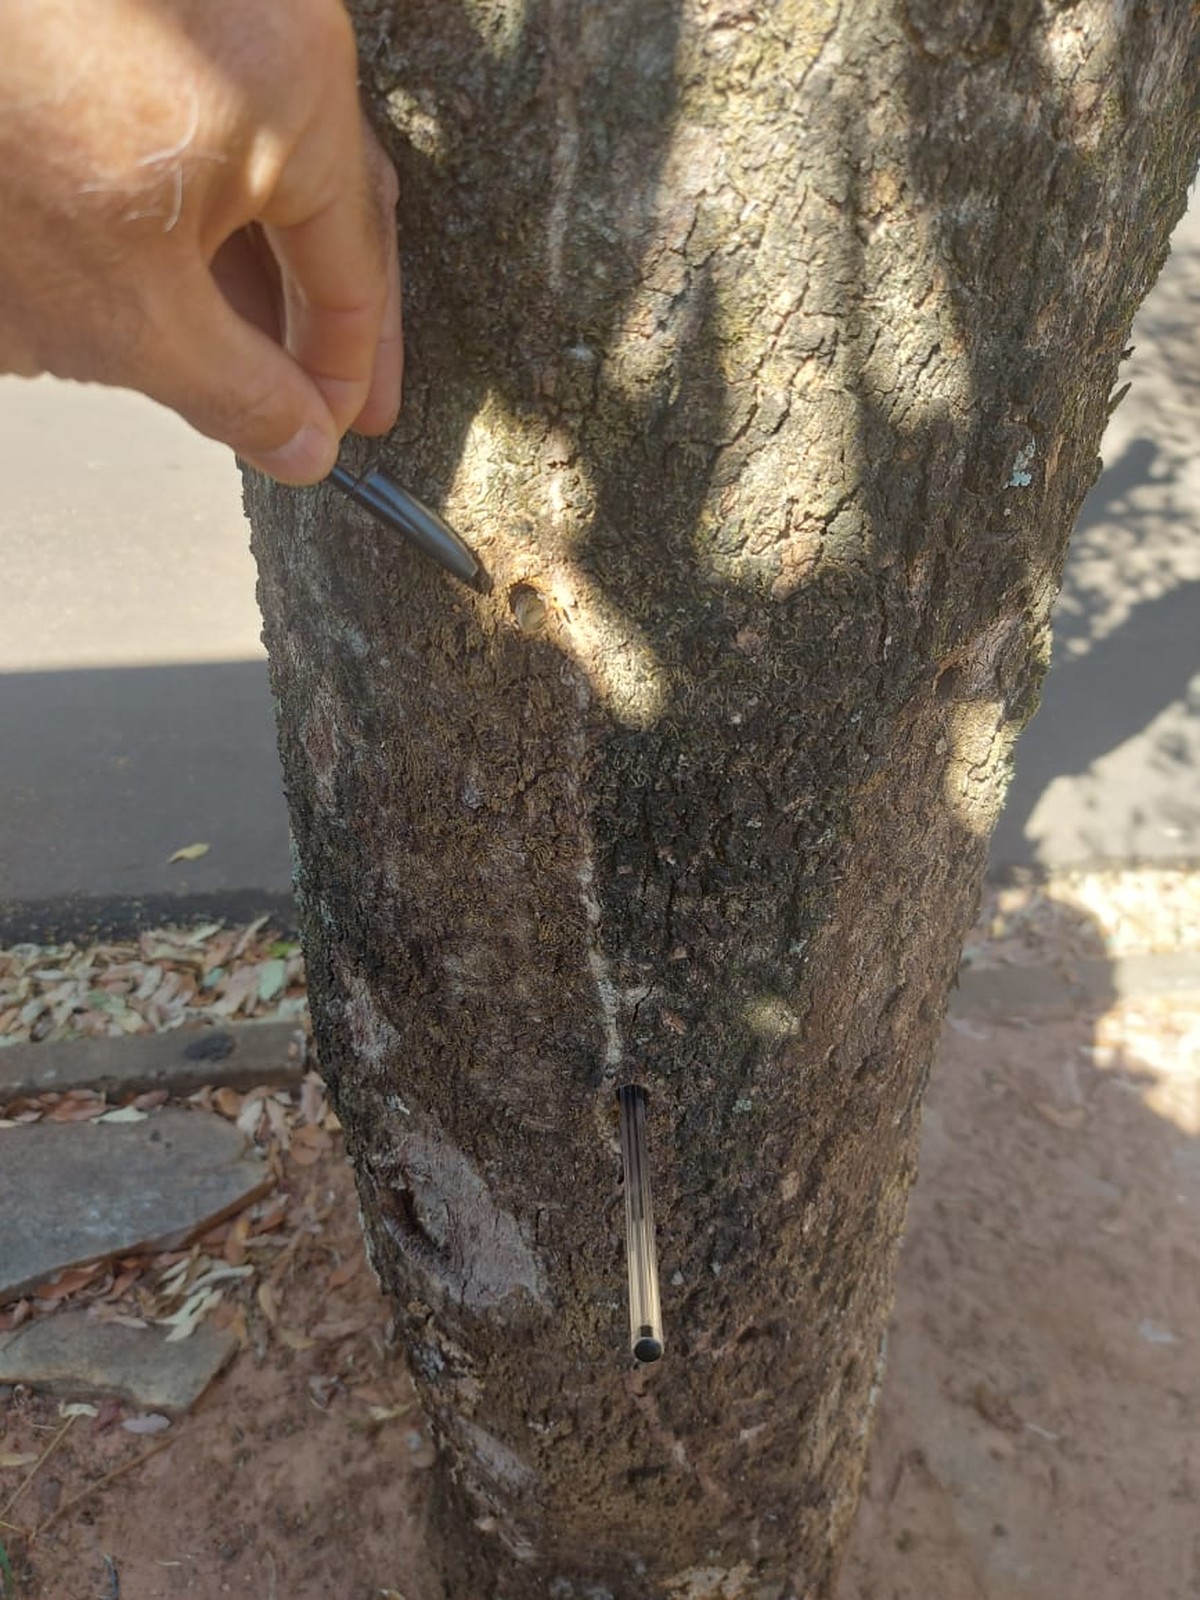 Polícia Ambiental constata envenenamento e corte irregular de árvores em calçada em Regente Feijó | Presidente Prudente e Região